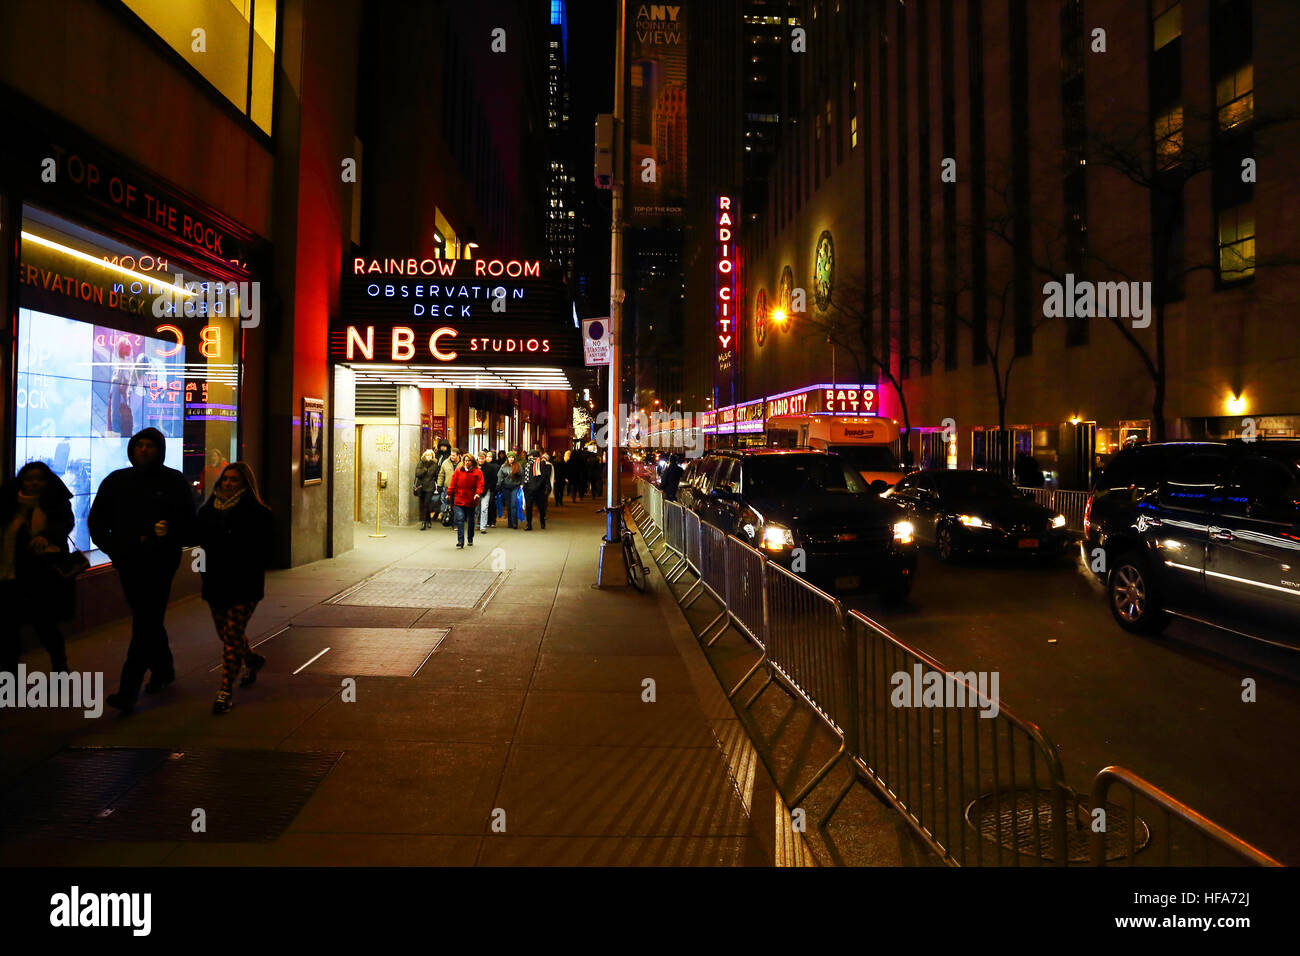 Der Blick nach Westen auf der 50th Street in Manhattan zeigt den Eingang zu den NBC Studios und Radio City Music Hall. Stockfoto